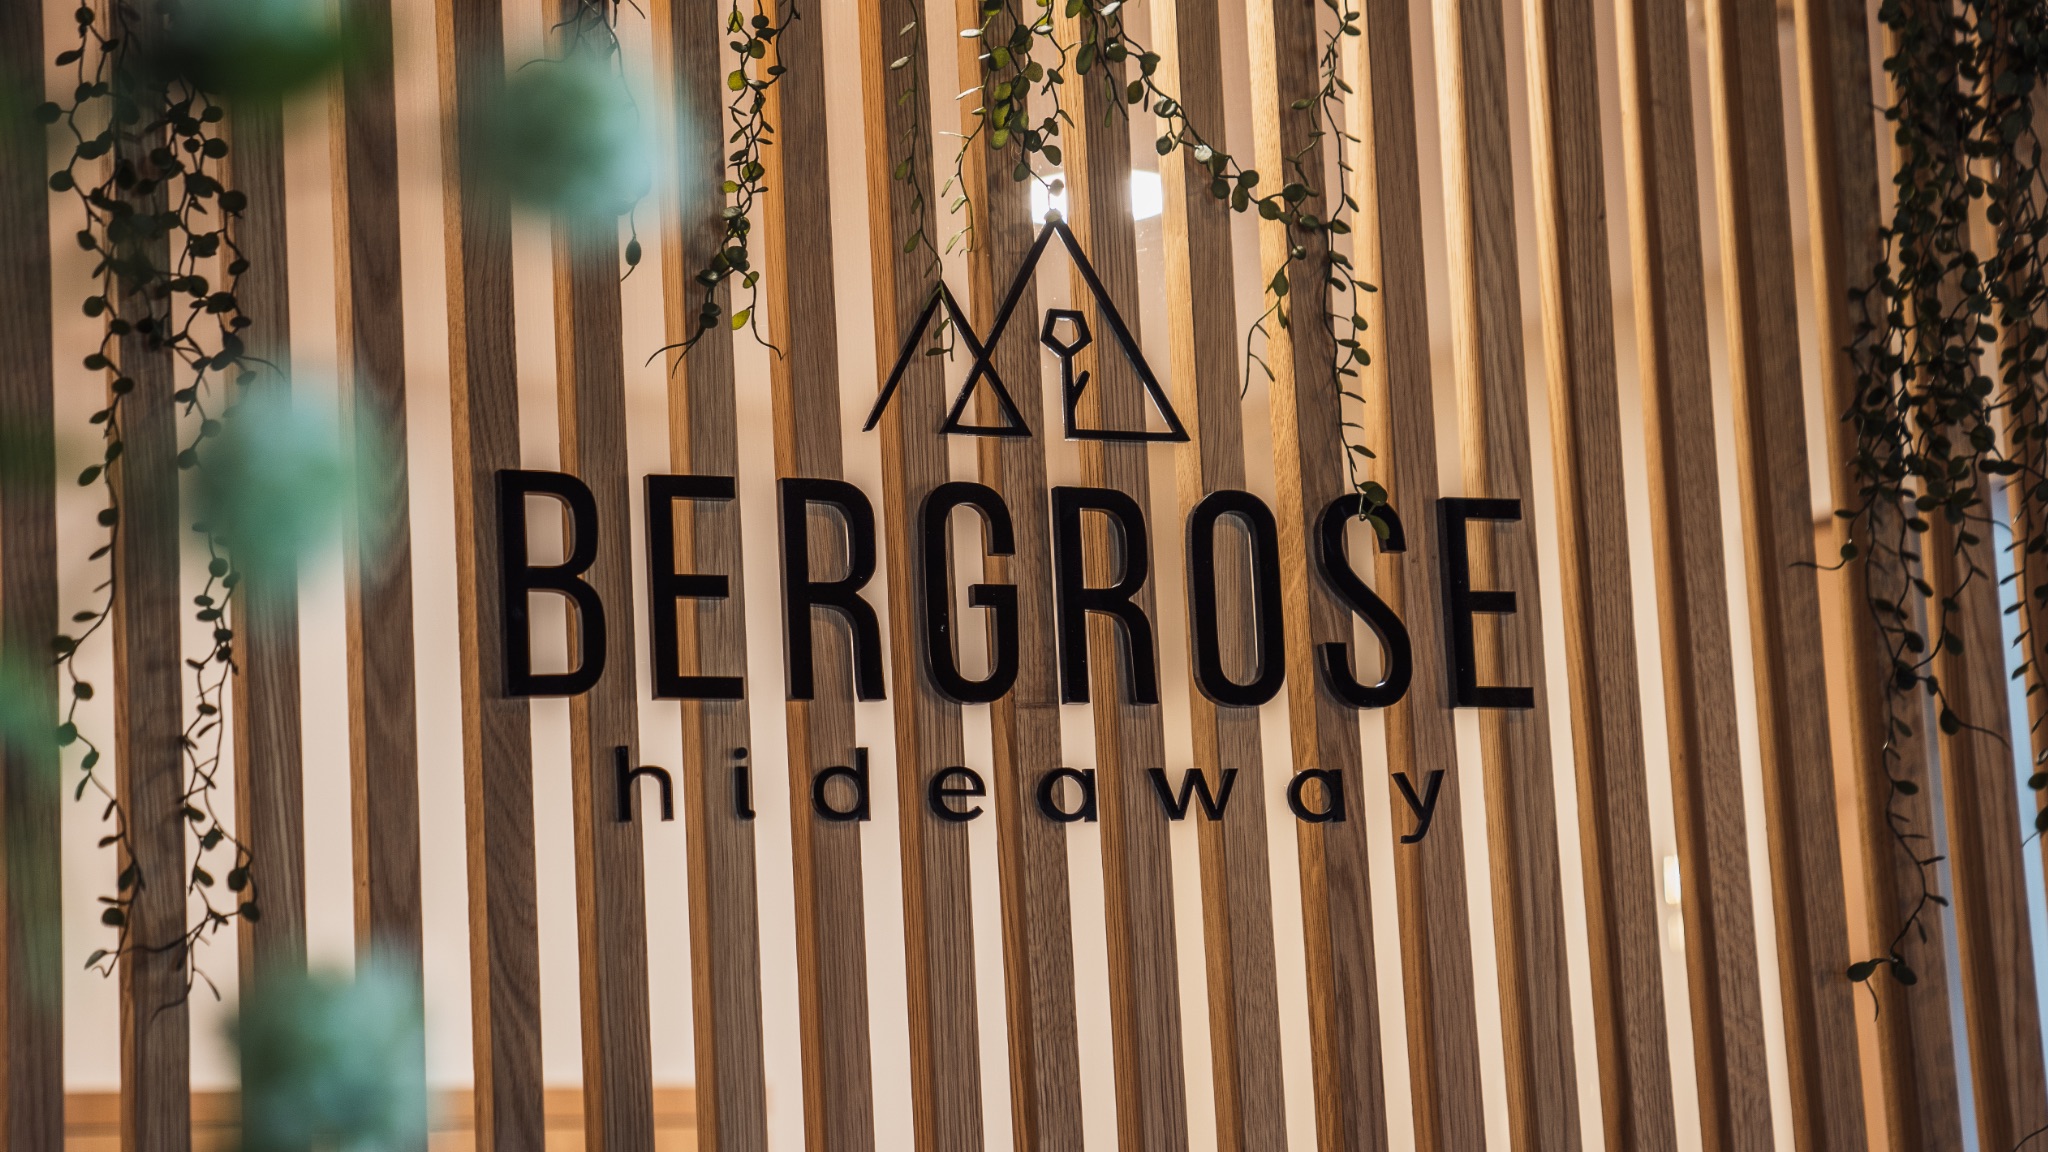 Bergrose Hideaway